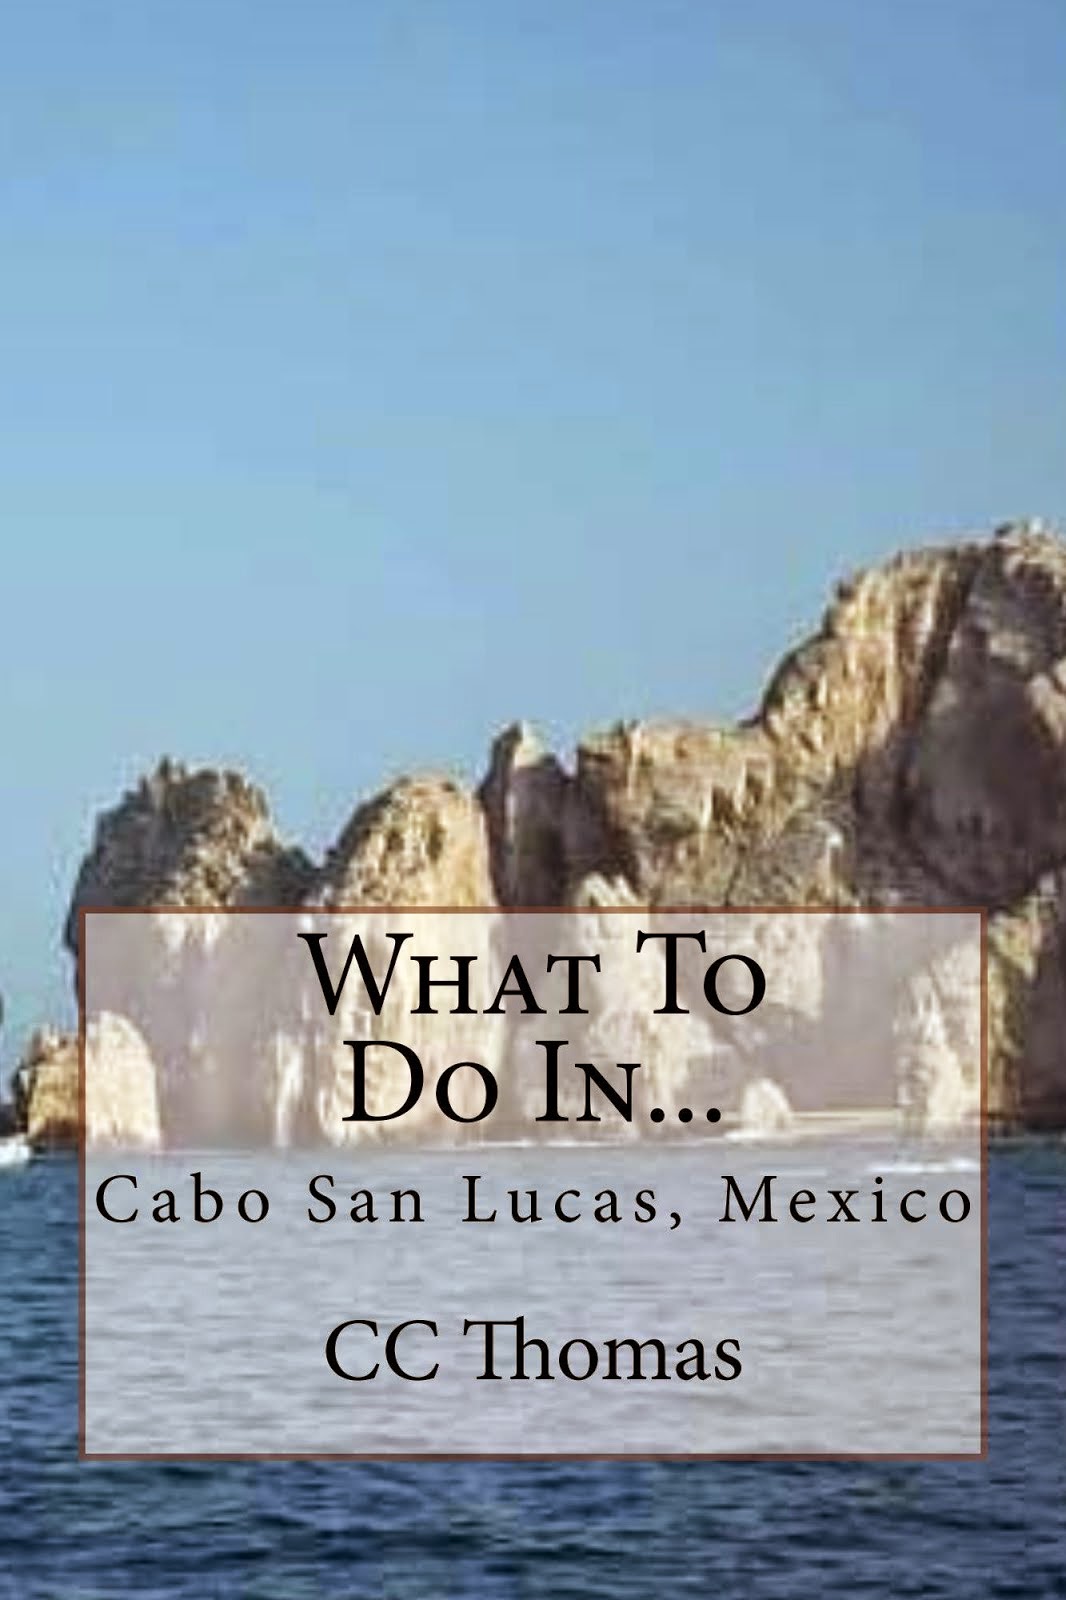 What To Do In...Cabo San Lucas, Baja California Sur, Mexico